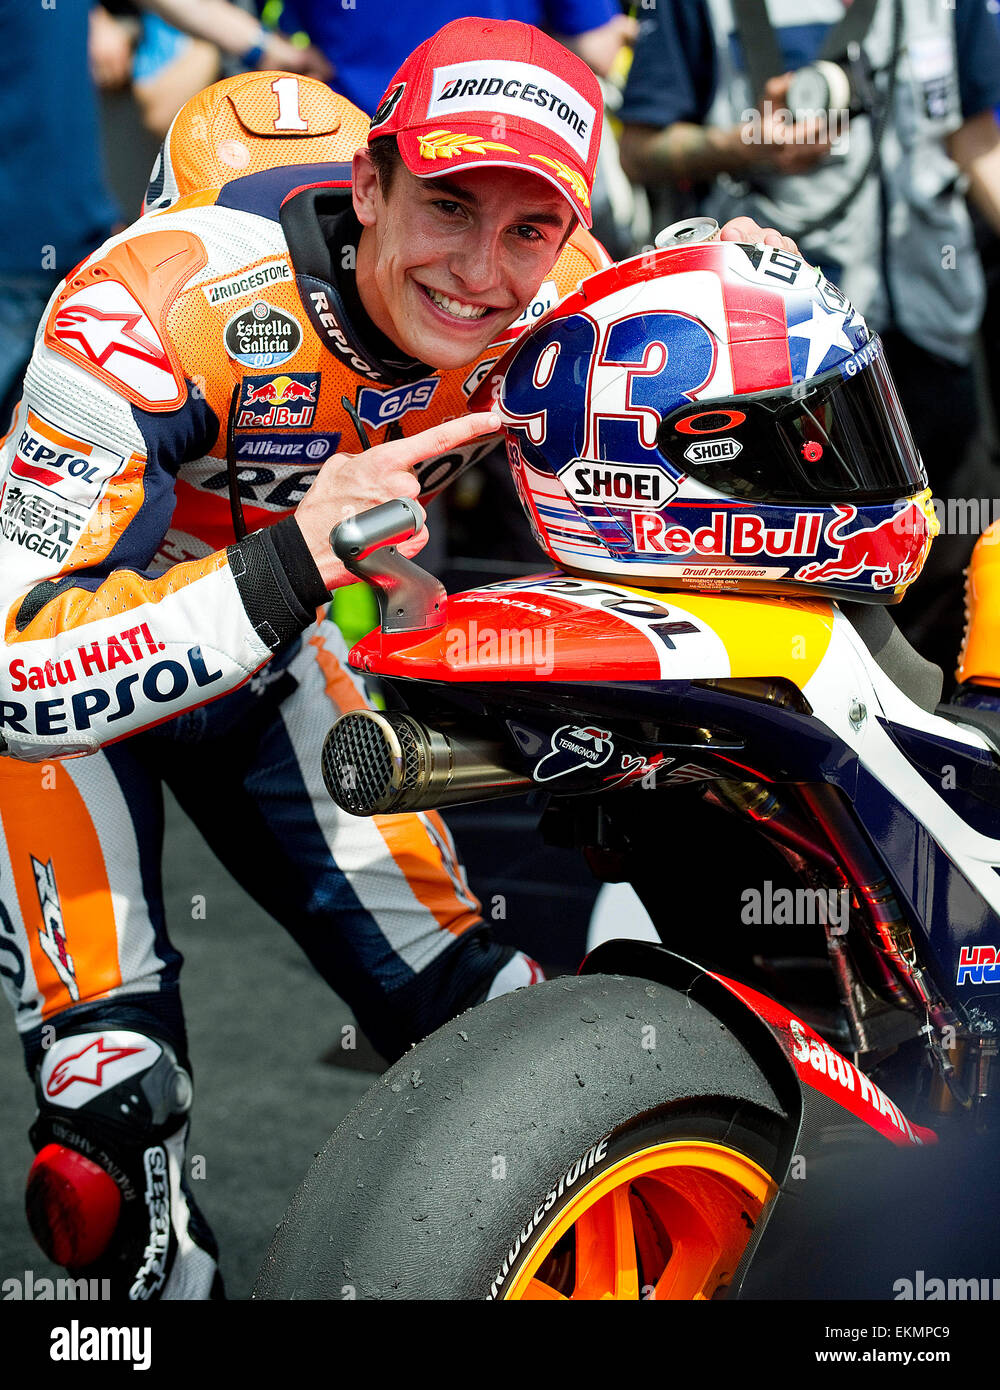 12 avril 2015 : Marc Marquez # 93 avec Repsol Honda Team prend la première  place en MotoGP chez Red Bull Grand Prix of the Americas. Austin, Texas  Photo Stock - Alamy